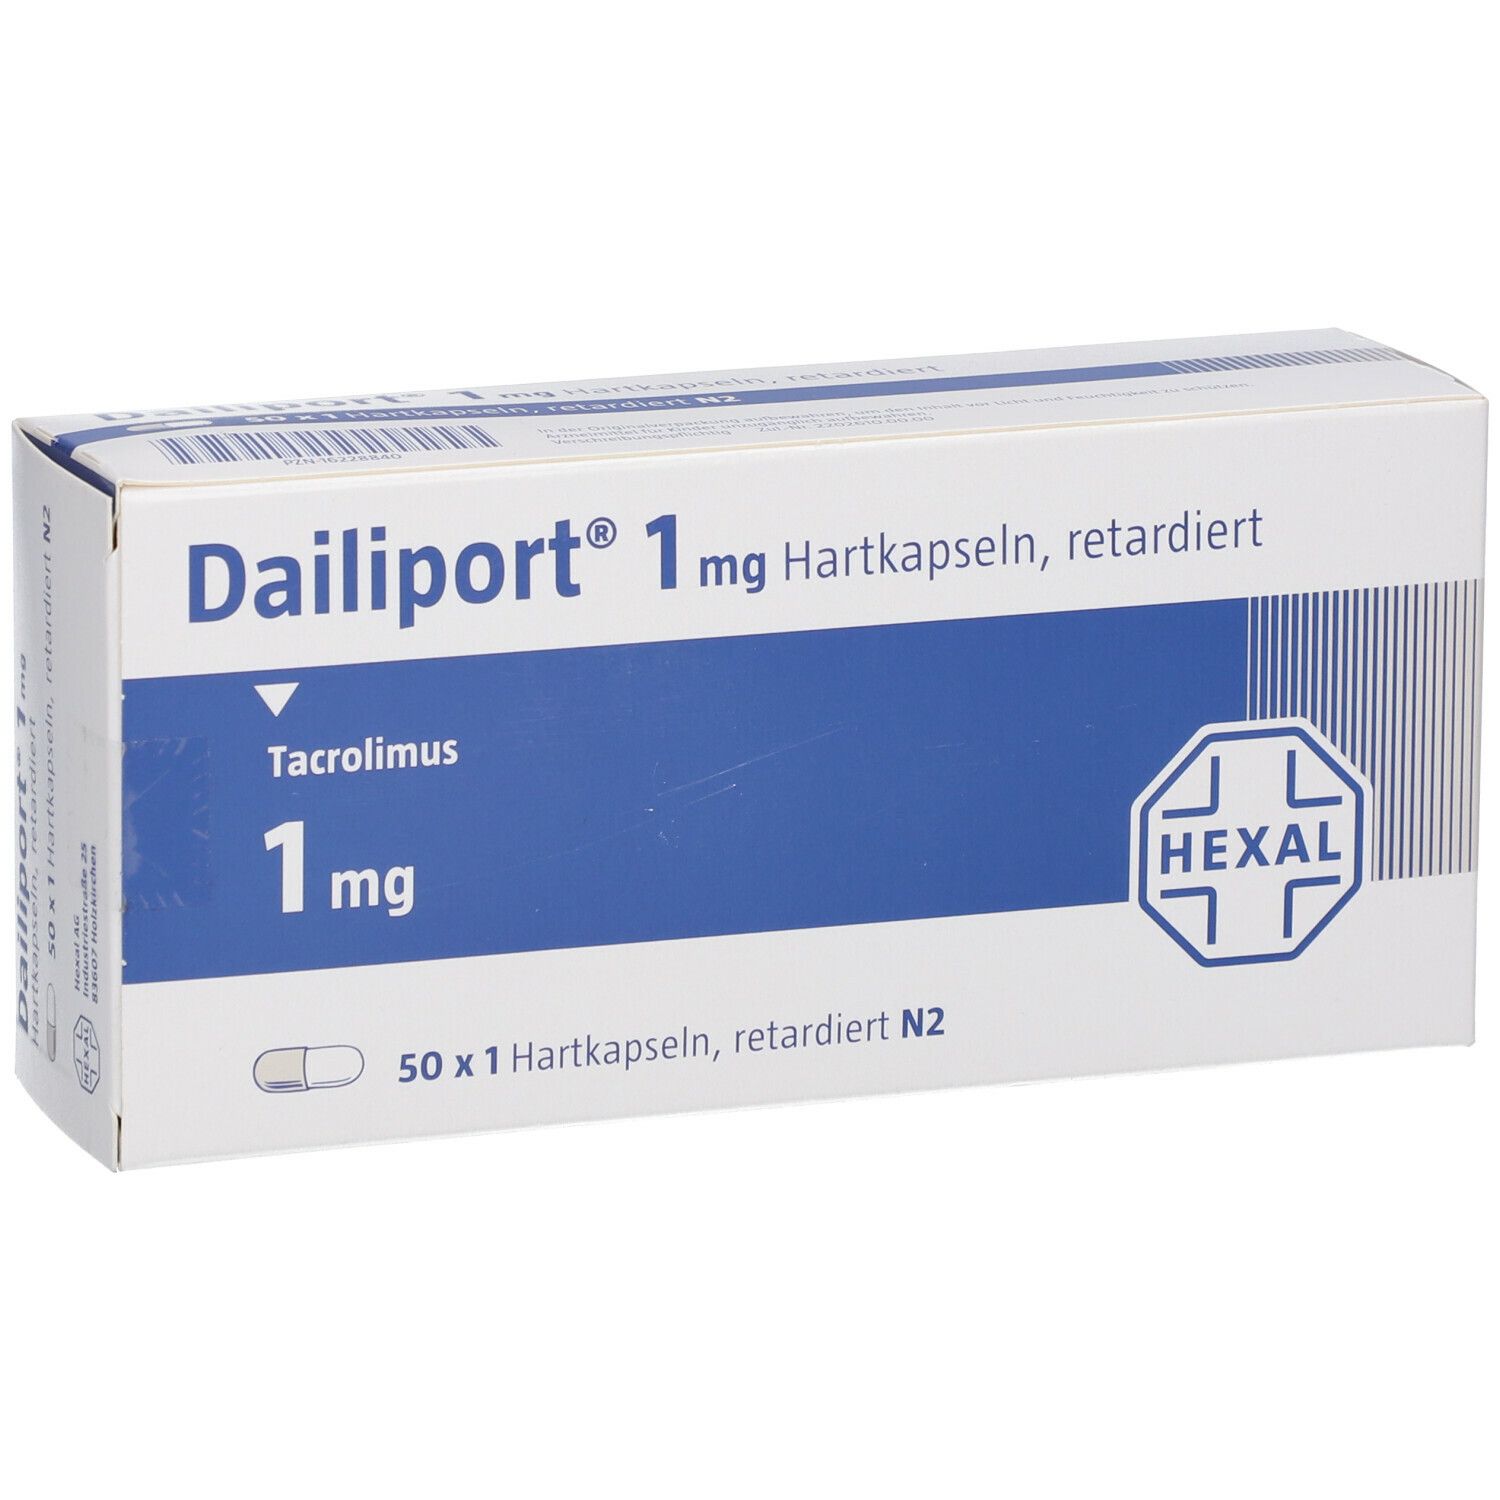 Dailiport® 1 mg